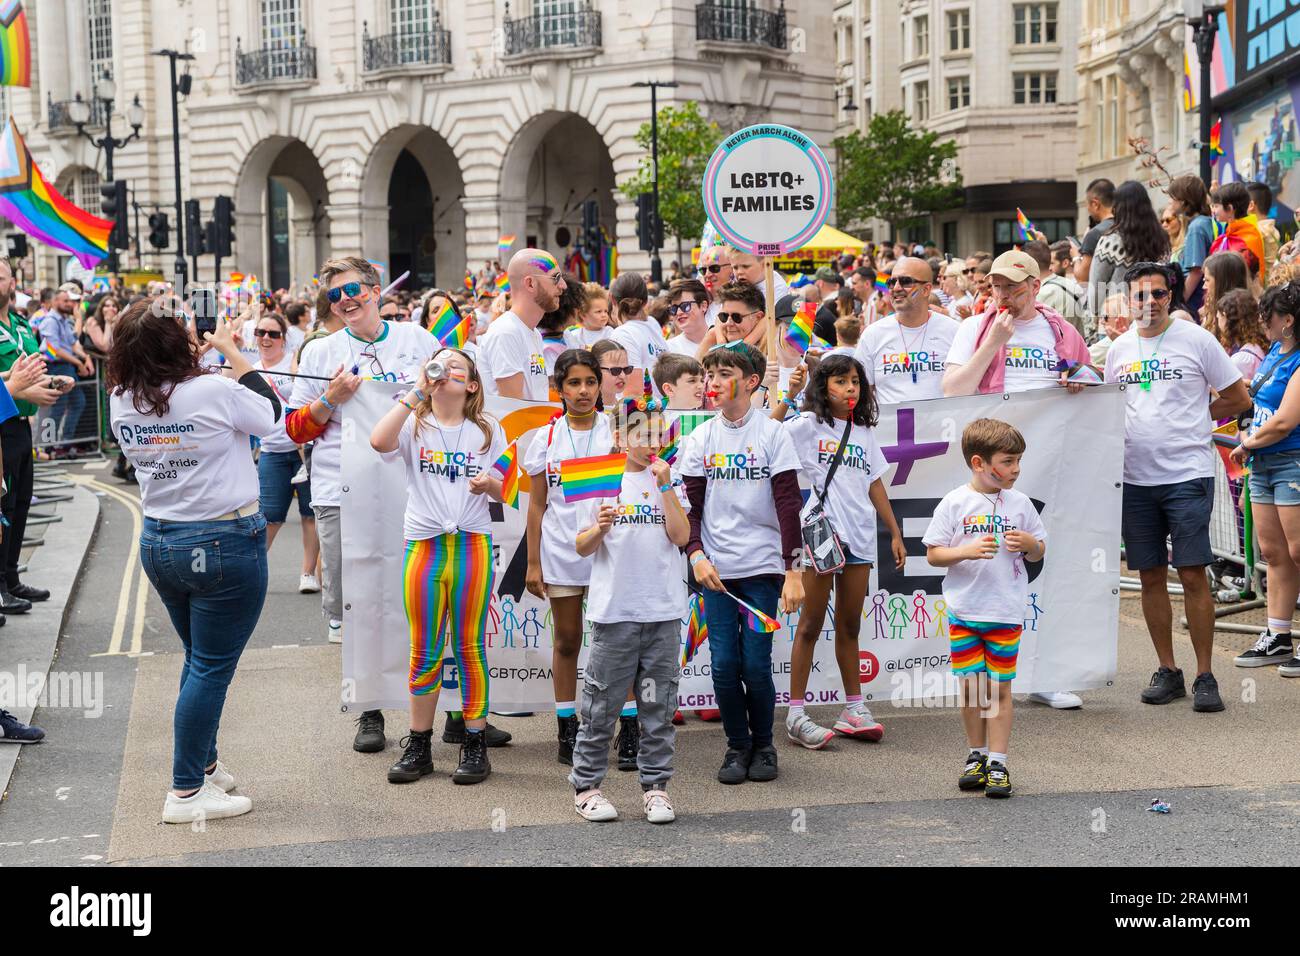 Famiglie LGBT+ in marcia al Pride di Londra Foto Stock